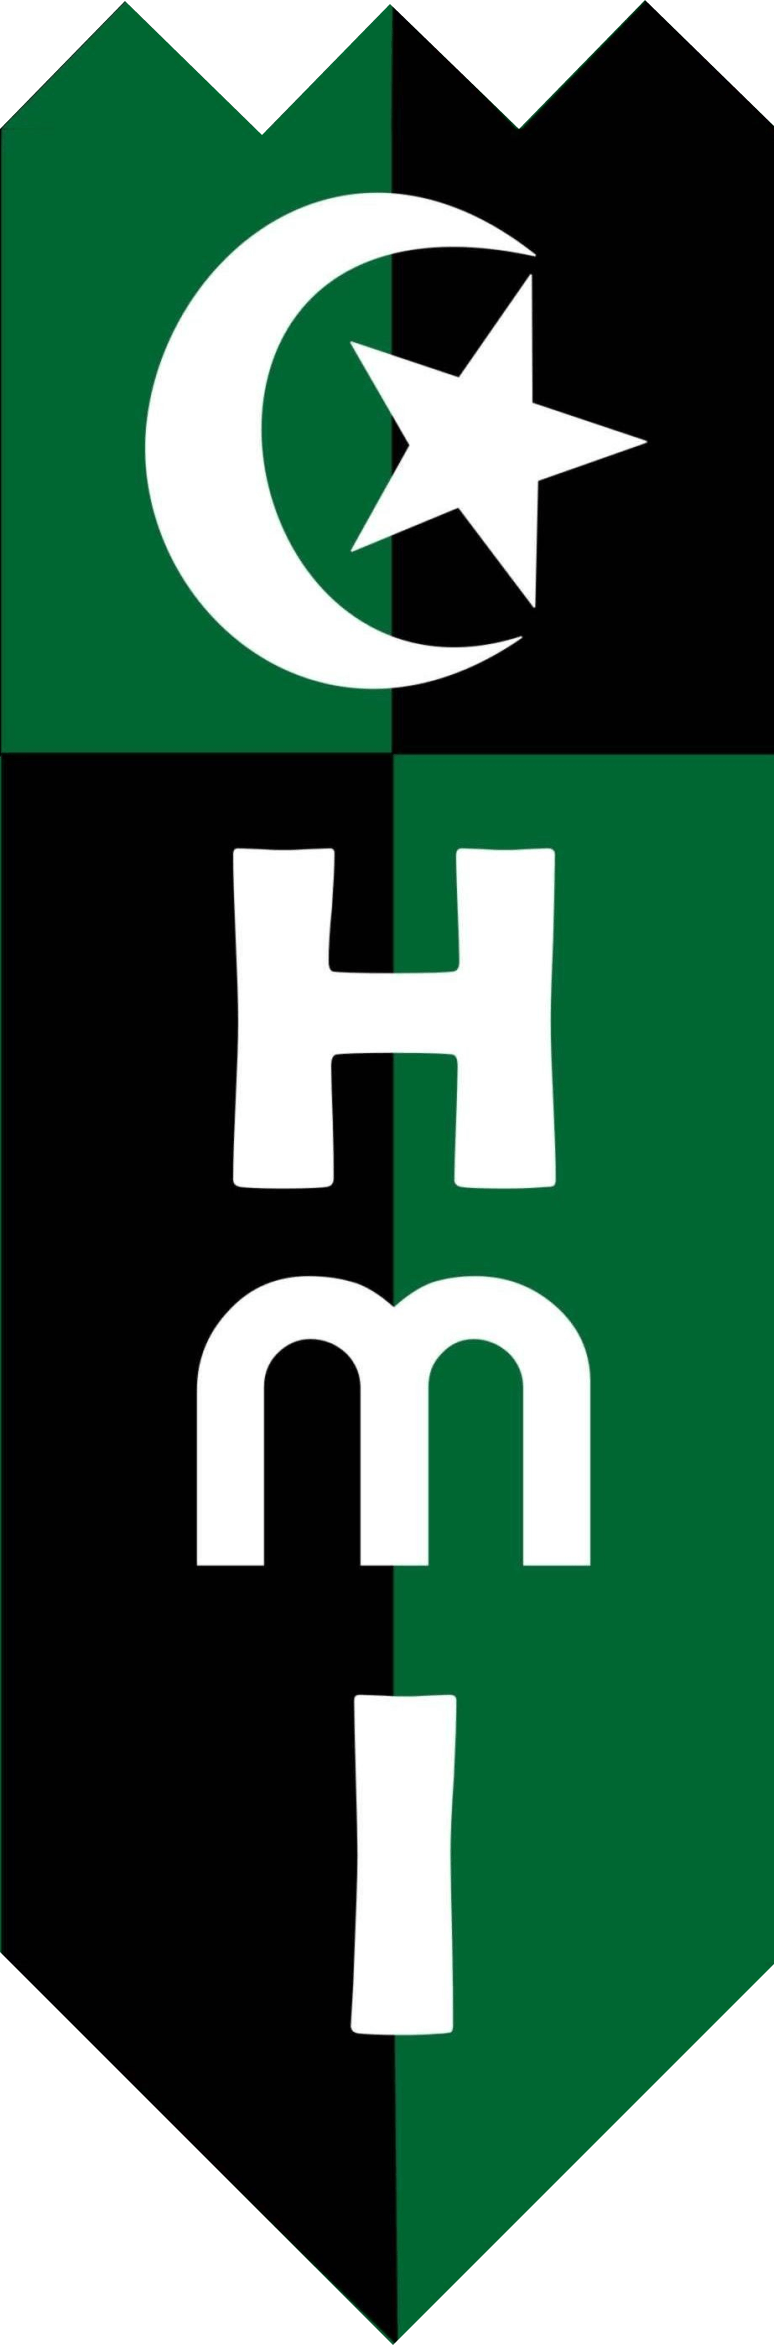 HMI Logo - logo hmi png - AbeonCliparts | Cliparts & Vectors